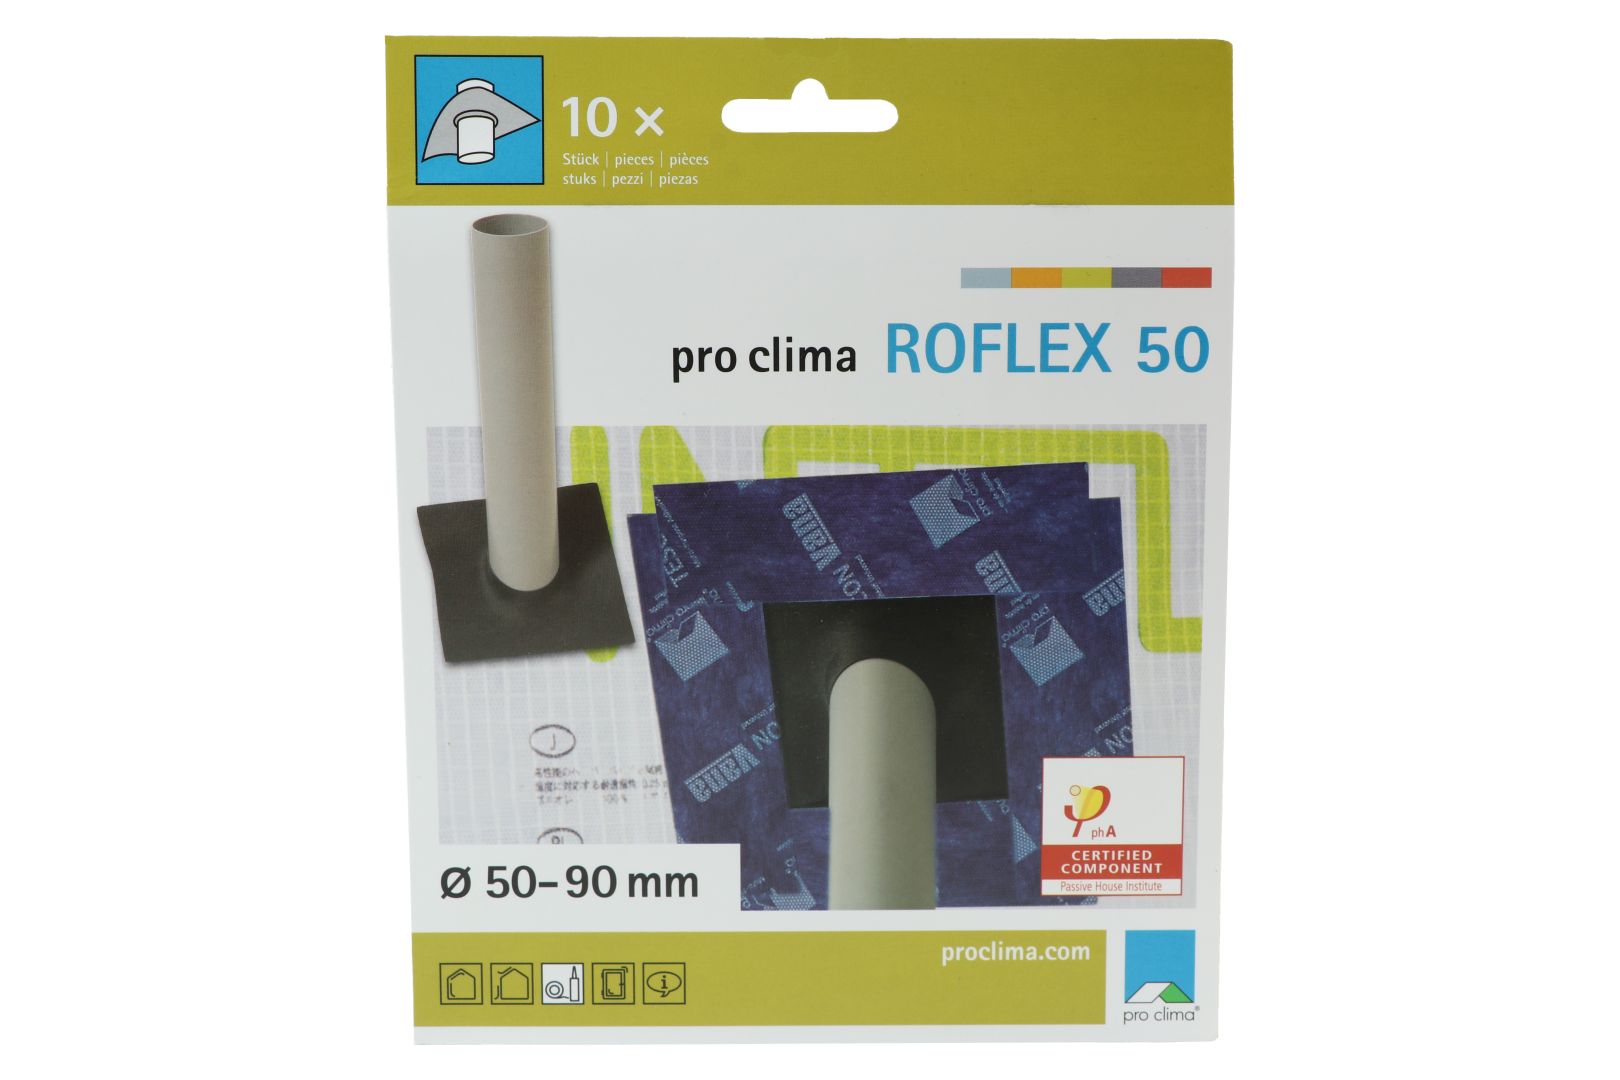 pro clima ROFLEX 50 Rohr-Manschette, 145 x 145 mm, für Rohre mit Ø 50 - 90 mm, 10-er Pack